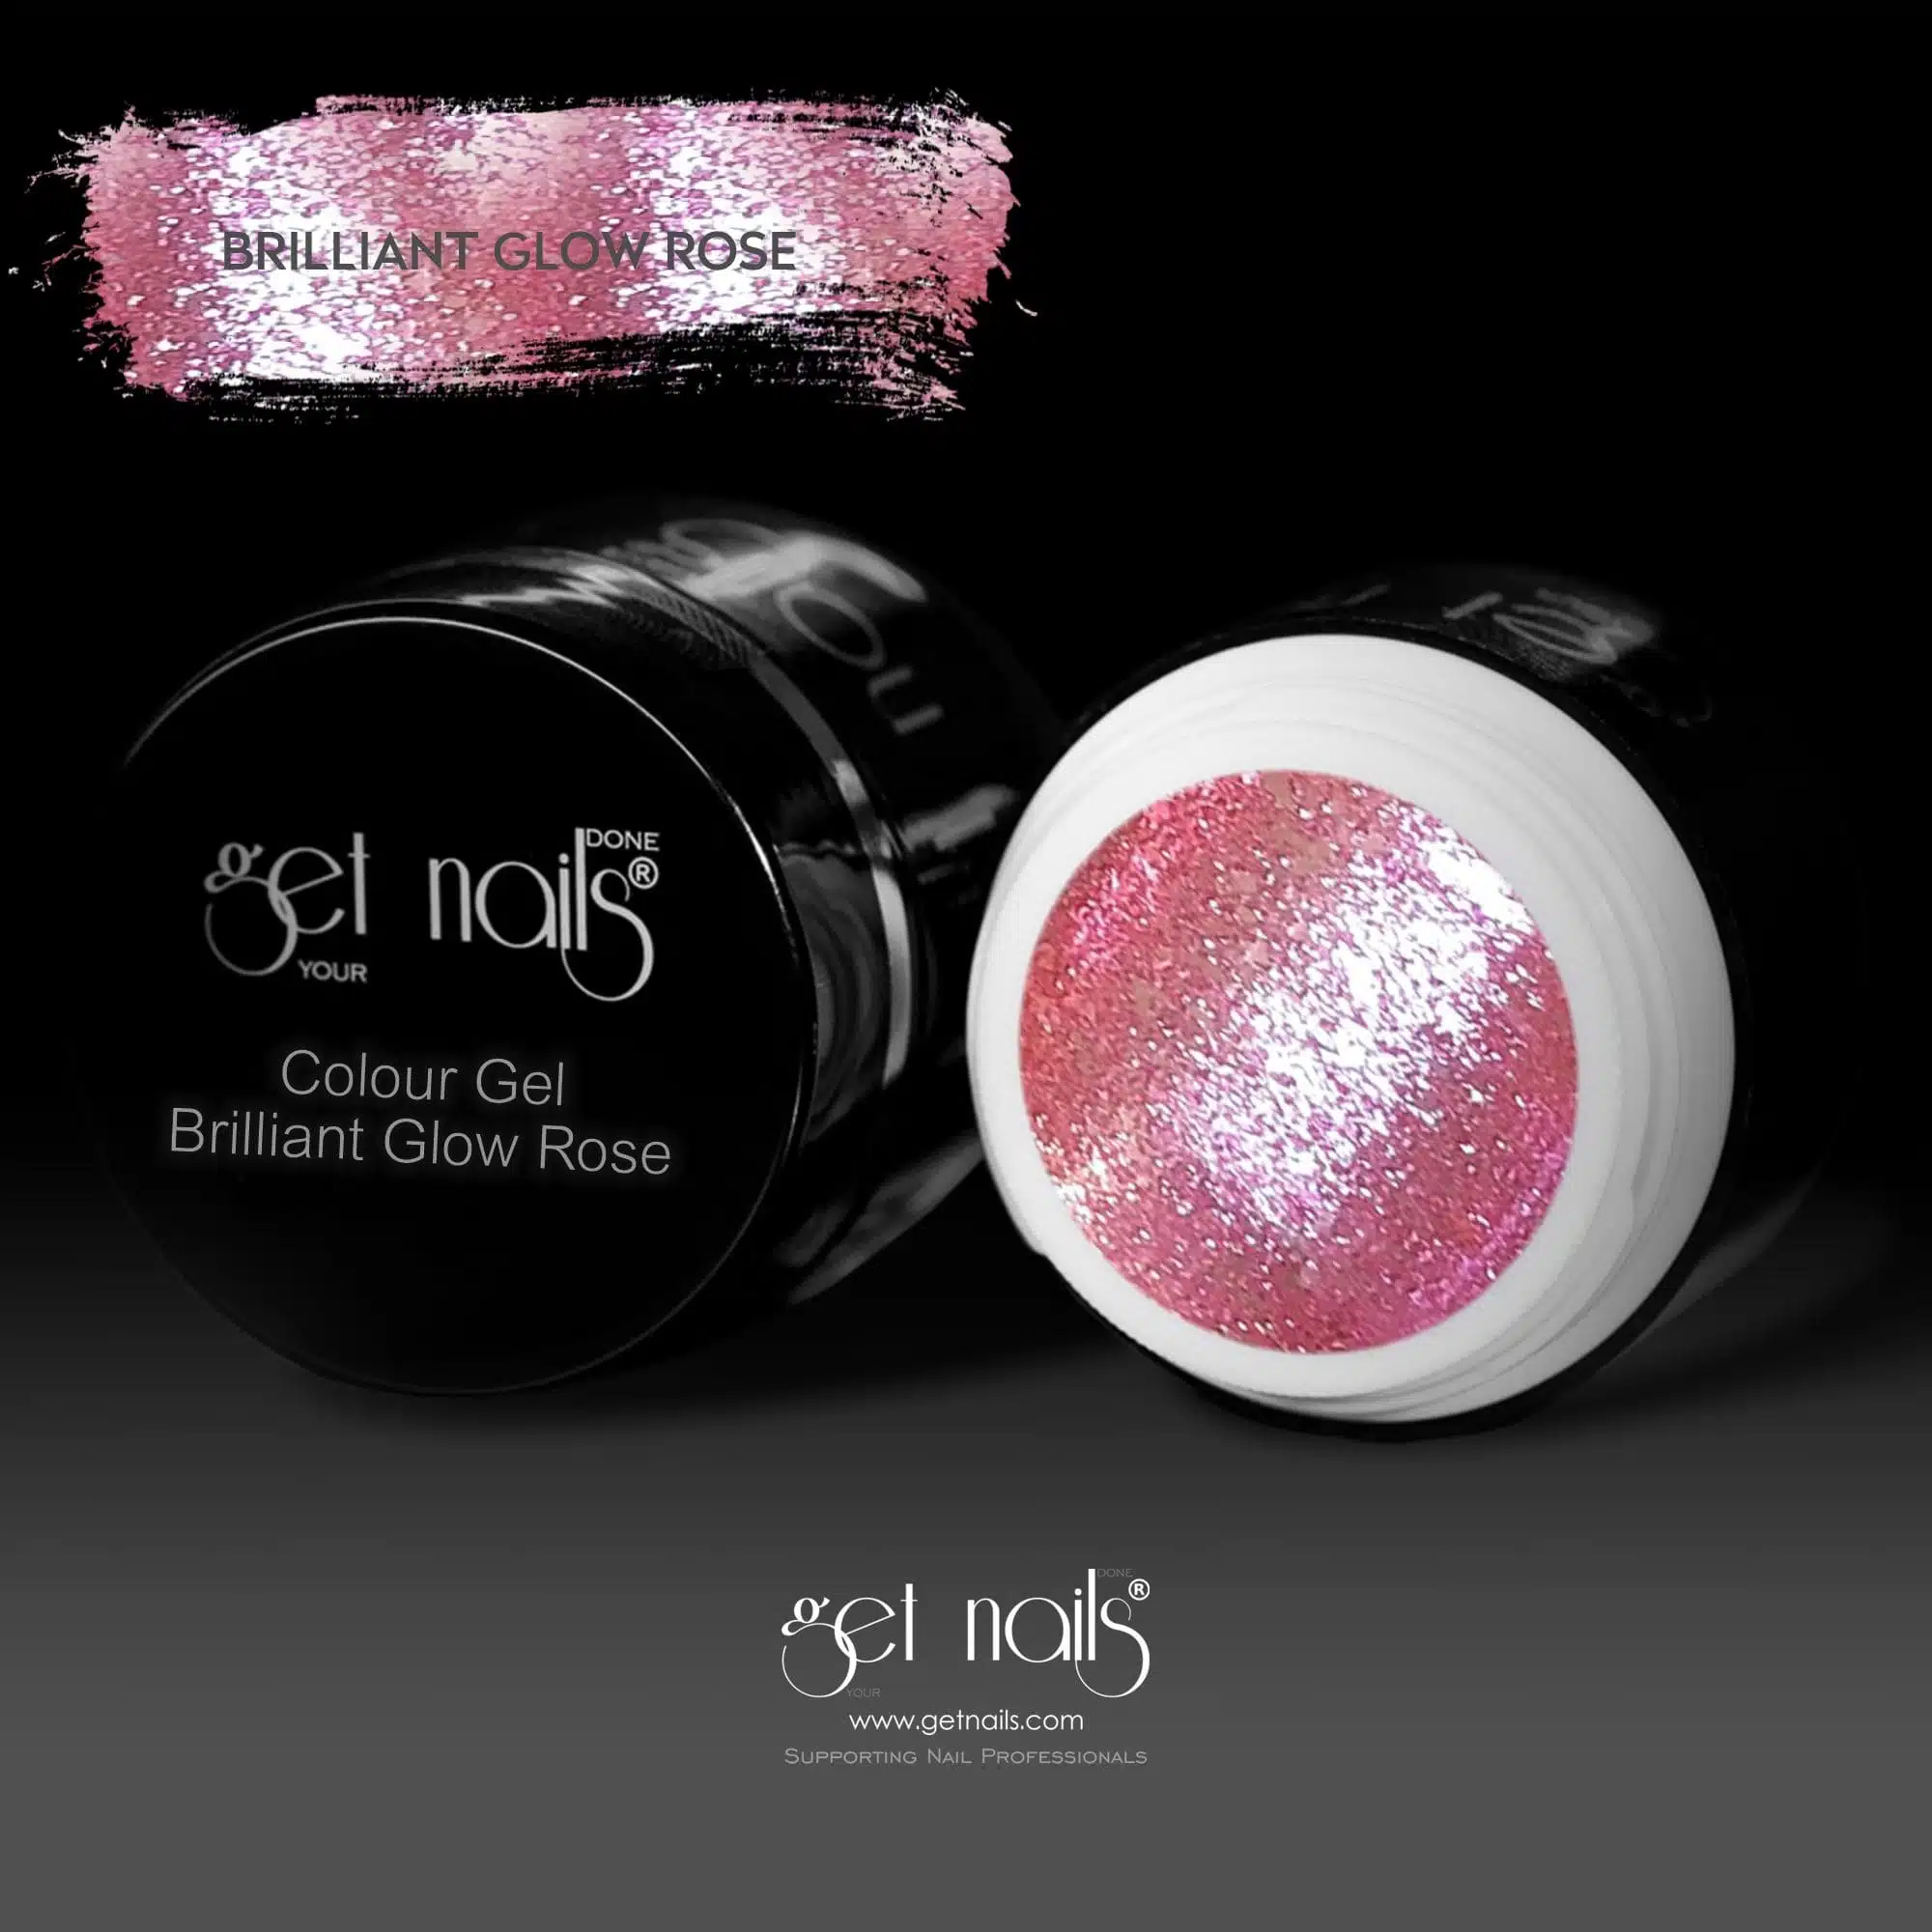 Get Nails Austria - Colour Gel Brilliant Glow Rose 5g